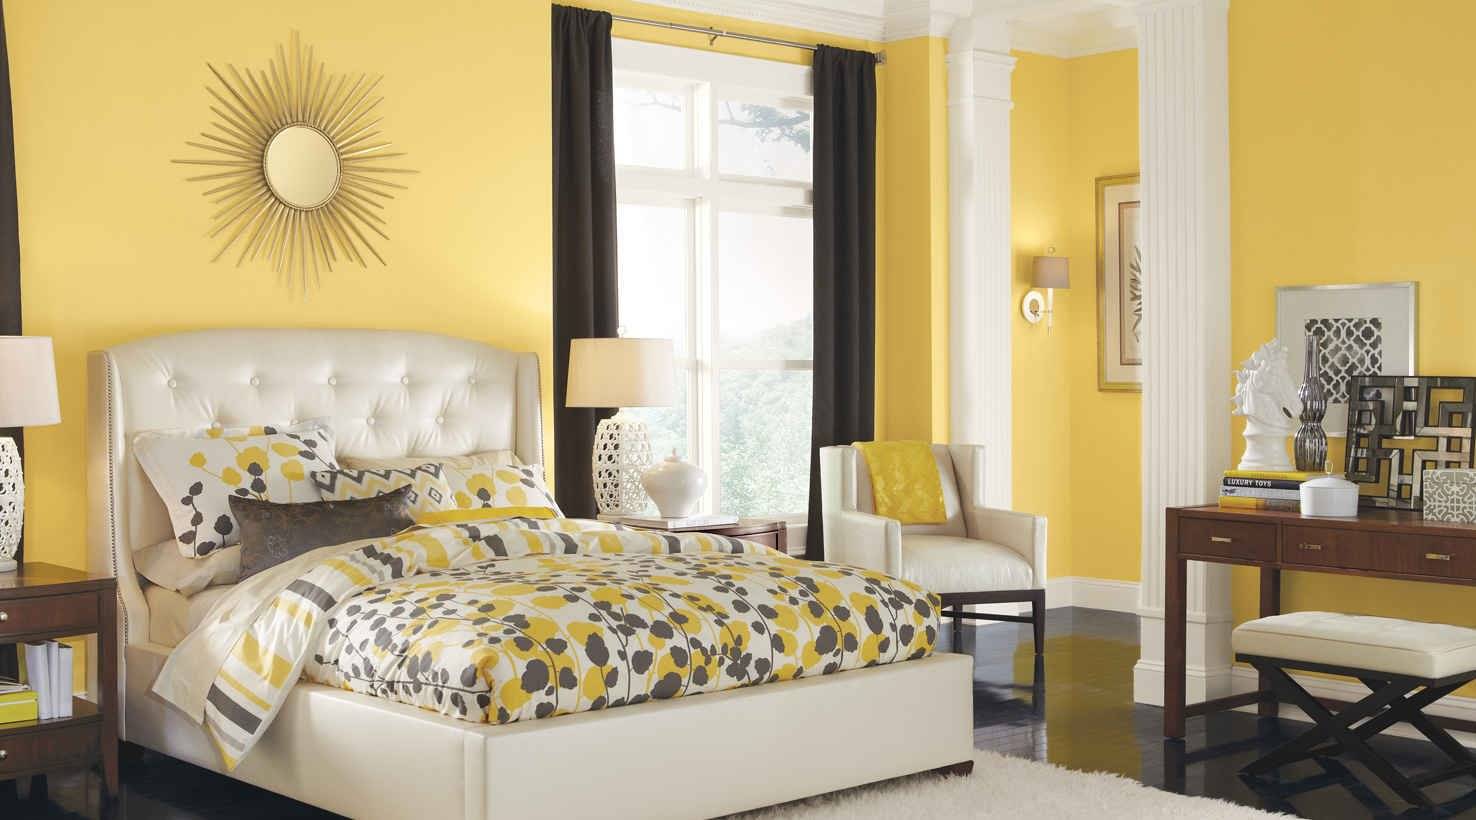 Обои желтые для стен: как выбрать нужный оттенок, как правильно поклеить без швов и подобрать сочетаемые стильные оттенки в маленькой или большой комнате